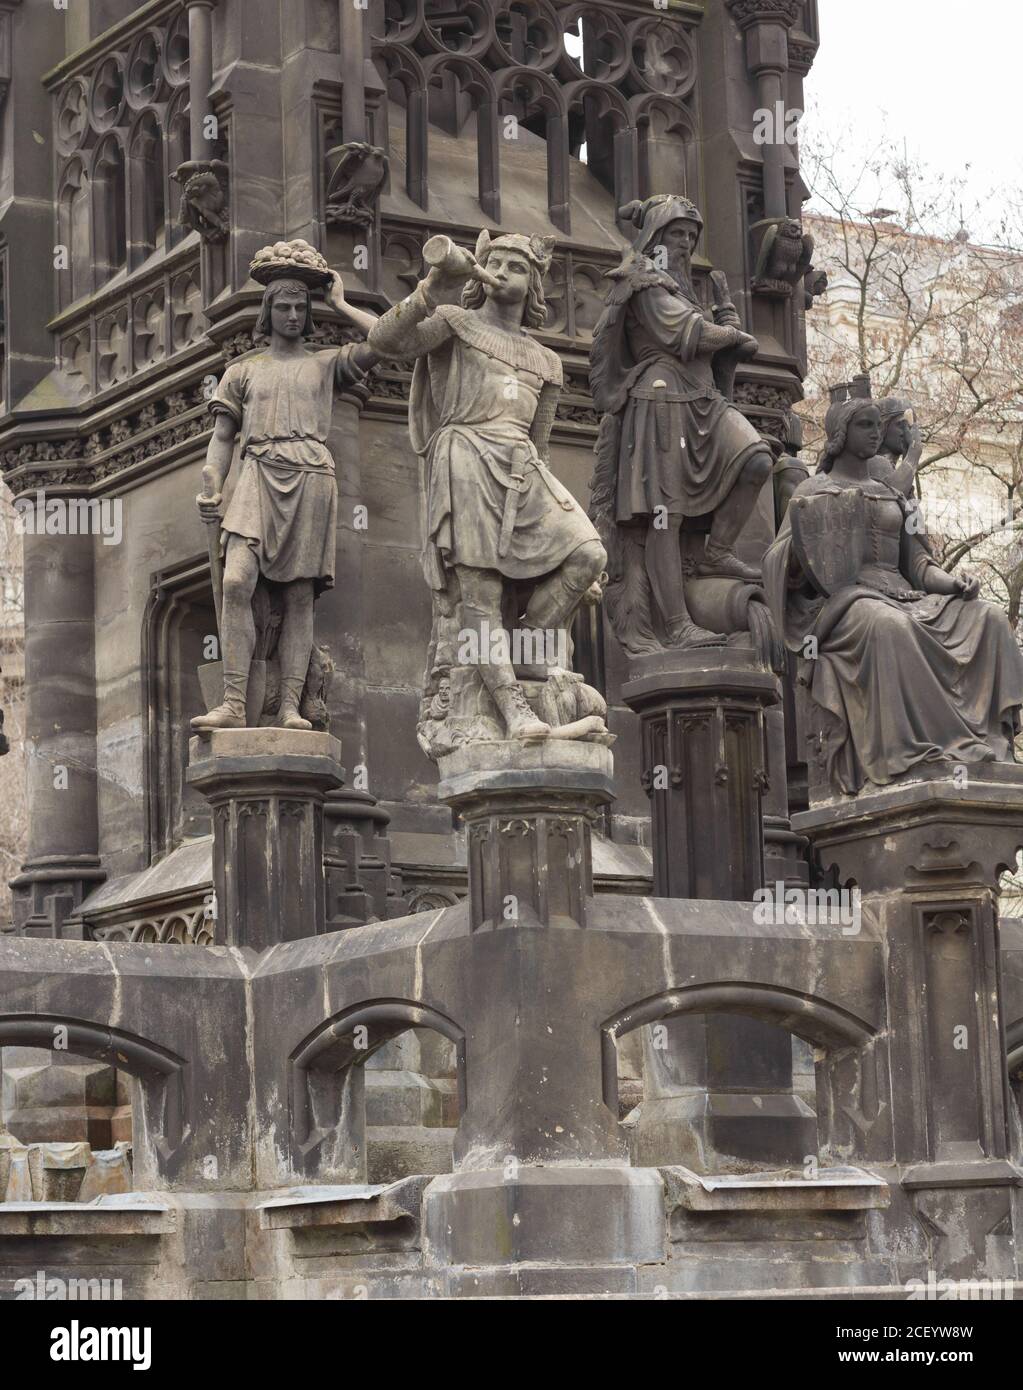 Histórica escultura neogótica del emperador Frantisek I en Praga Foto de stock